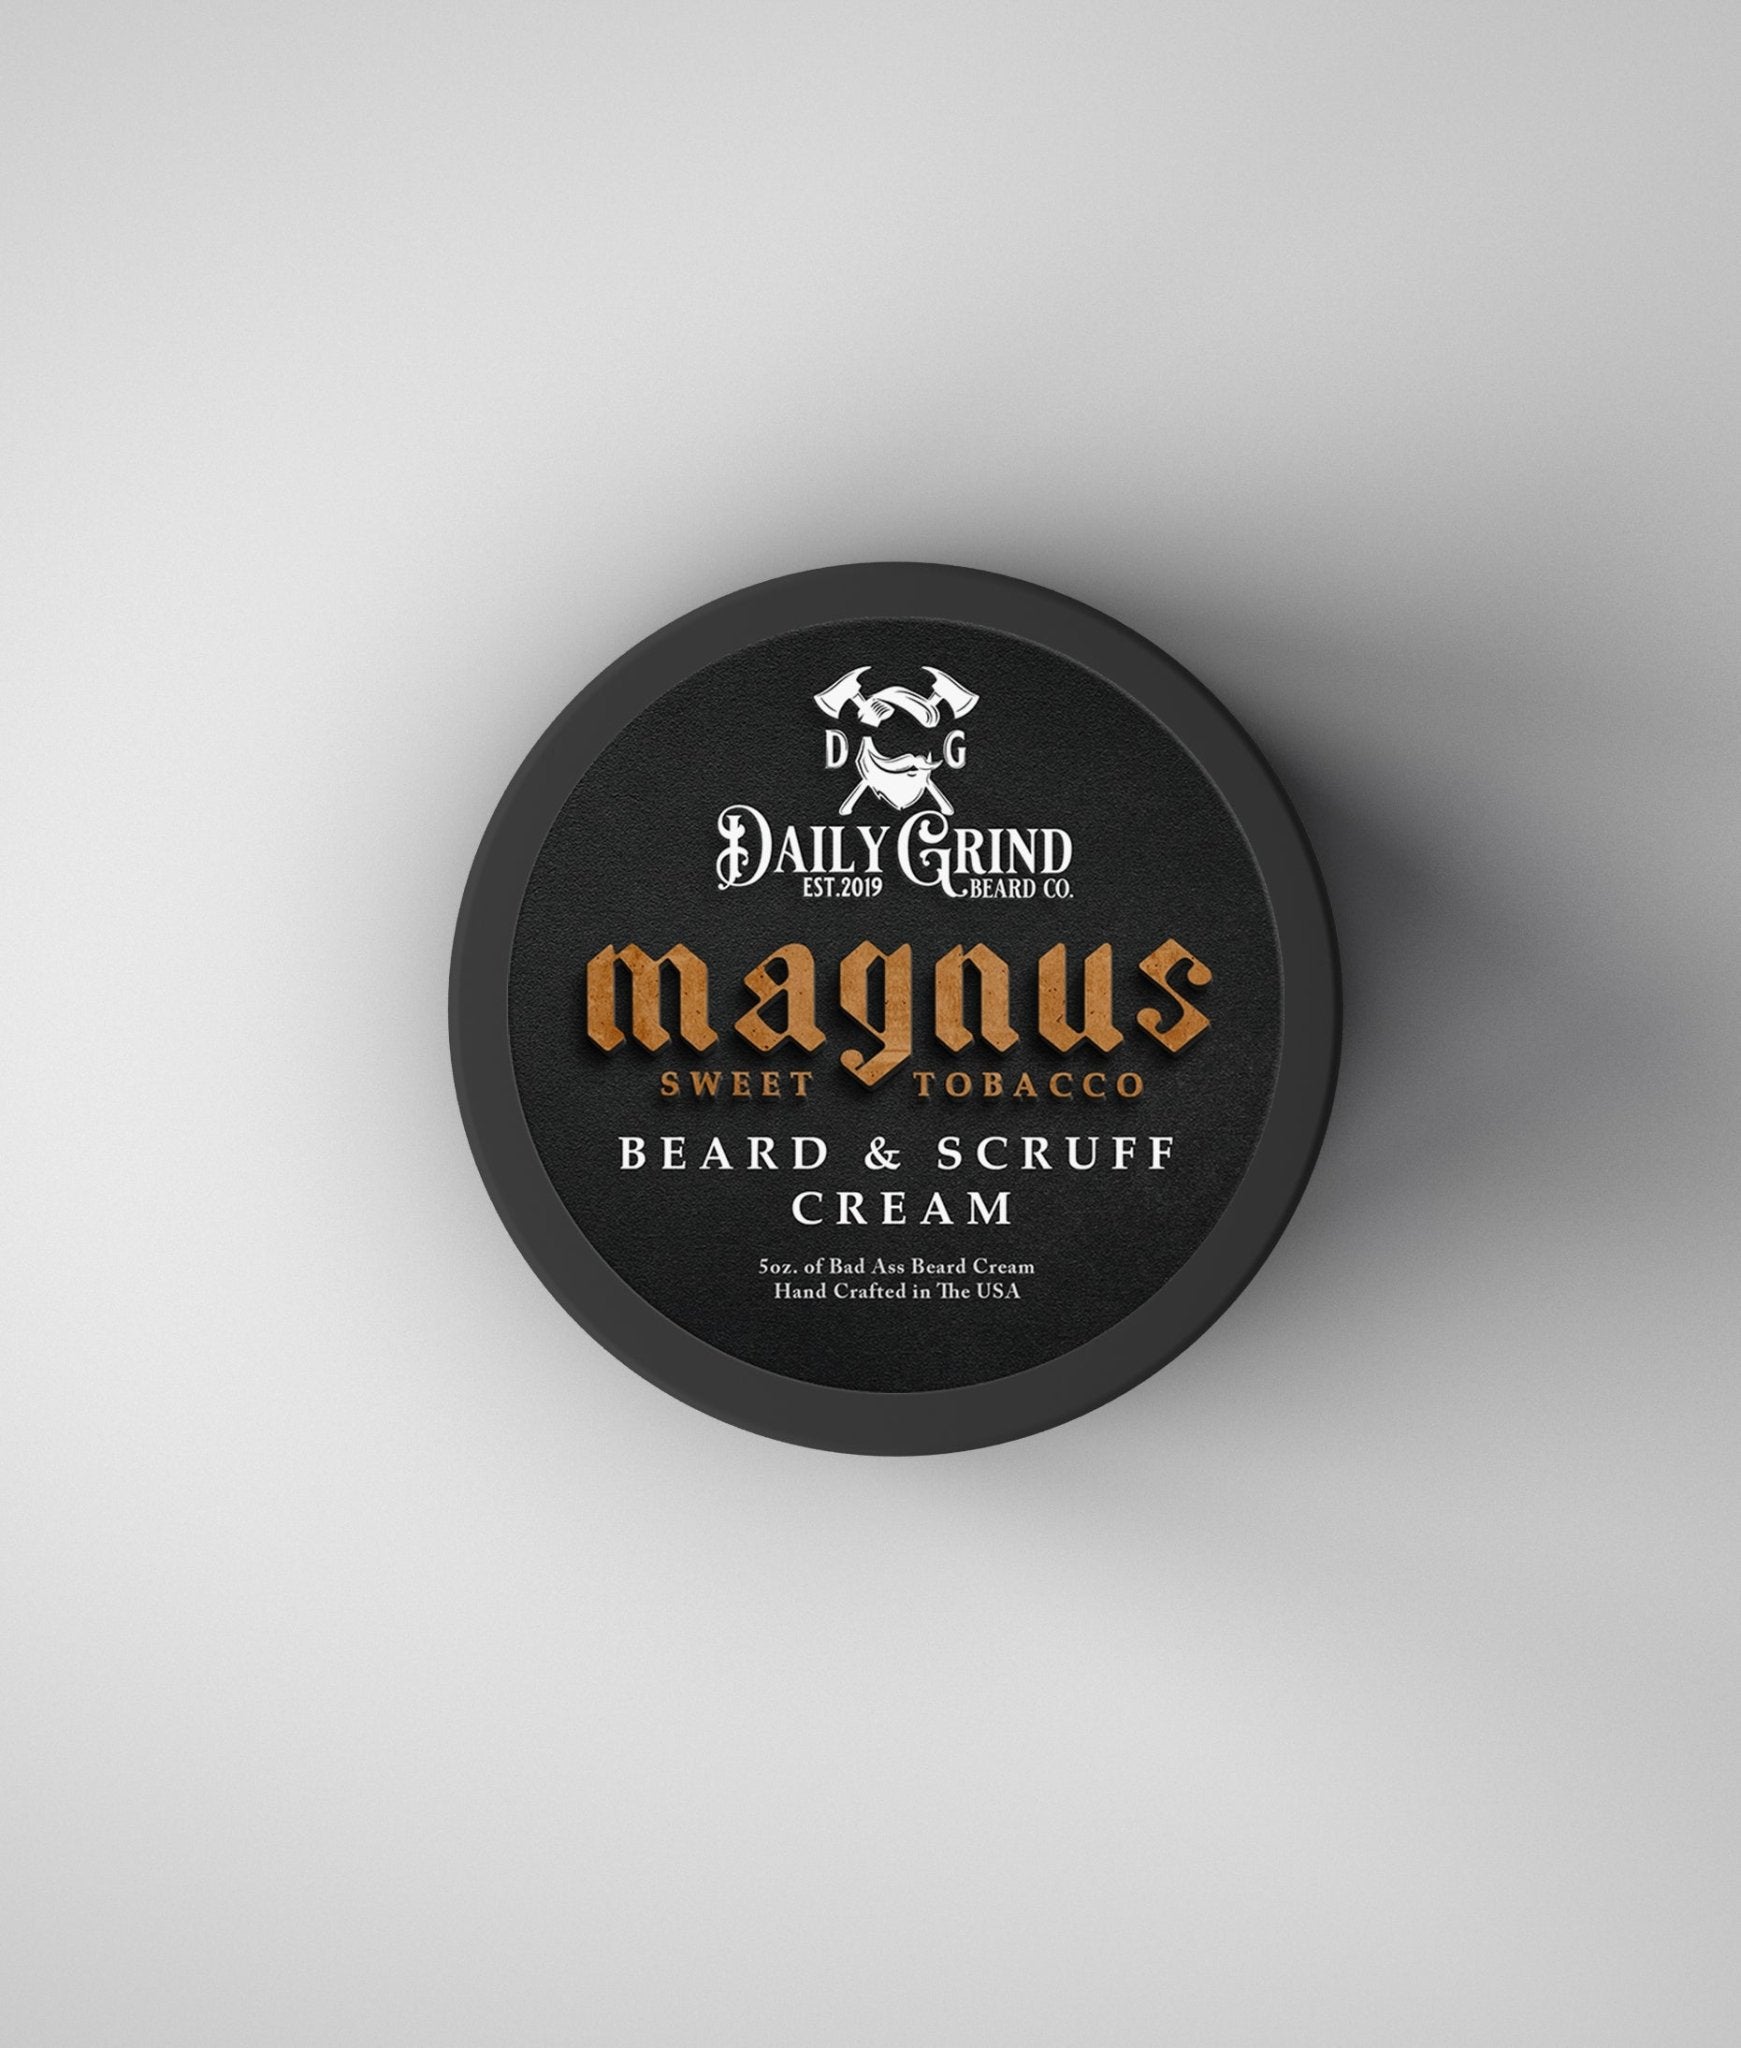 Magnus - Sweet Tobacco, Beard & Scruff Cream - Daily Grind